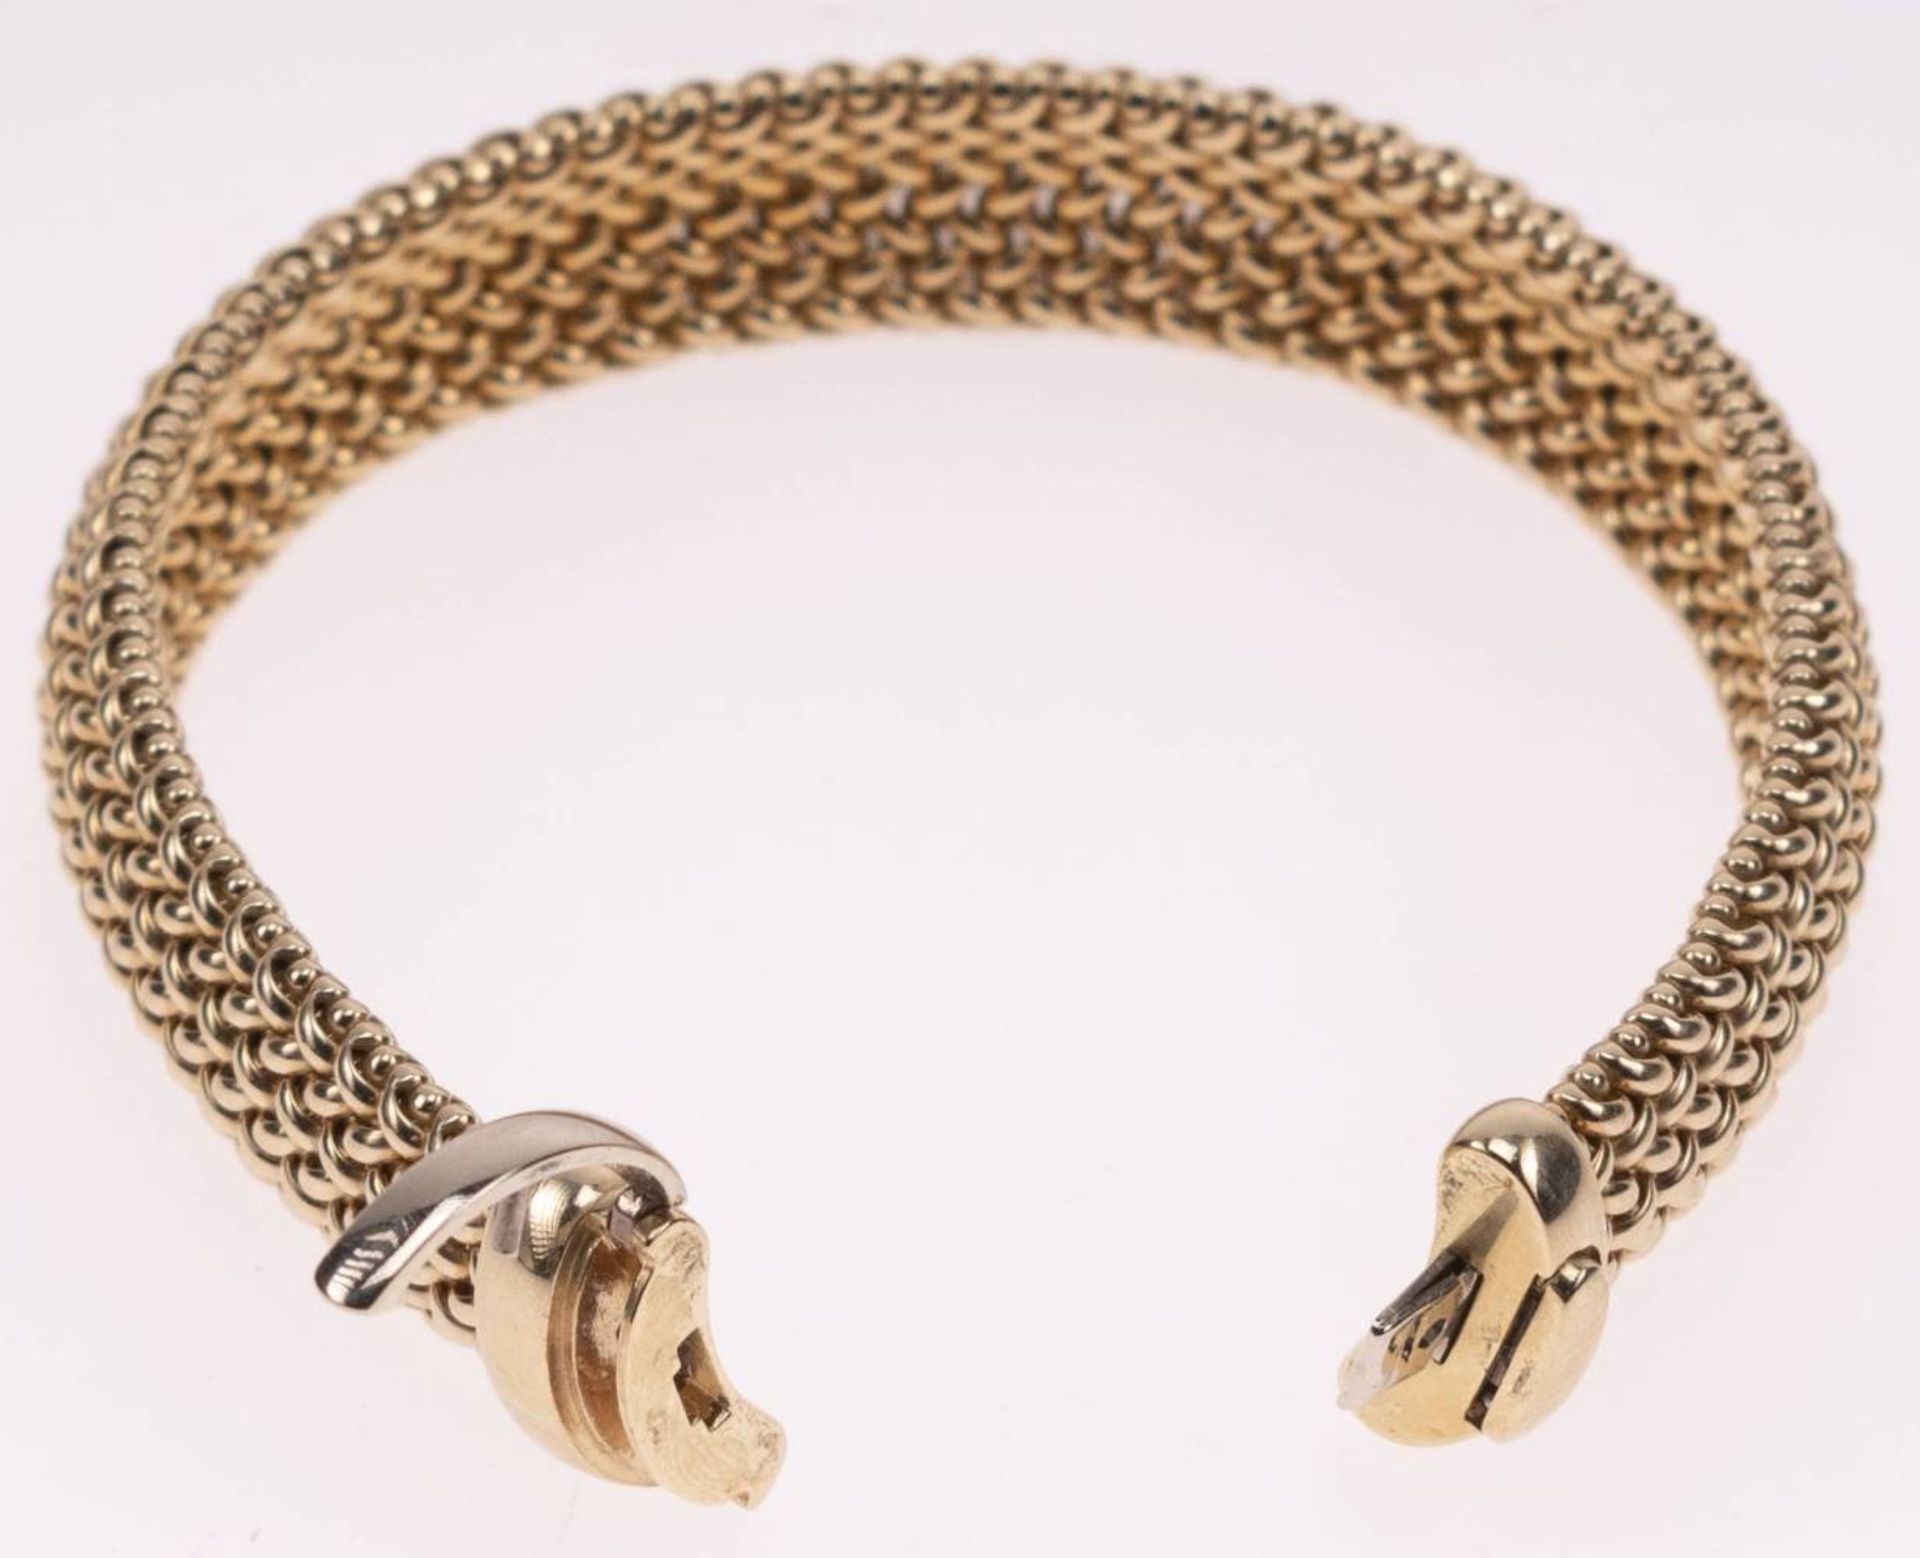 Milanaise Armband, 585 Gelbgold, Länge 19,5cm, Steckschließe mit Clipverschluss, fast ungetragen, - Bild 6 aus 6